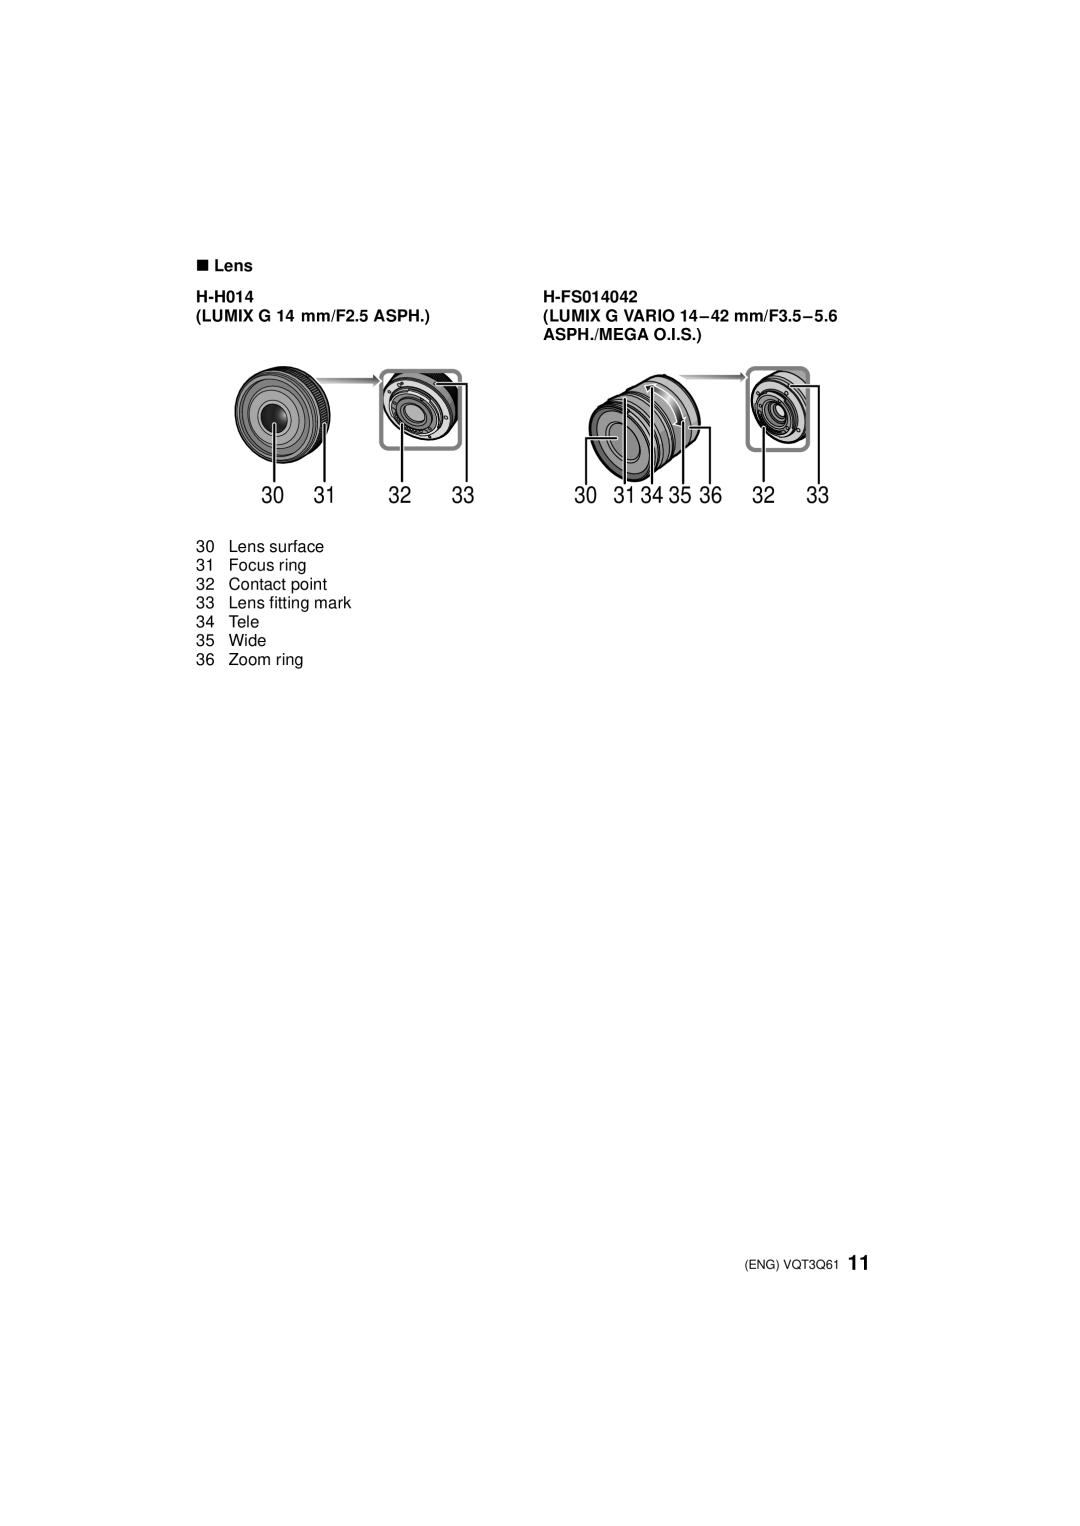 Panasonic DMC-GF3XK, DMC-GF3XT, DMC-GF3C 31 34 35, ∫ Lens, H-H014, H-FS014042, LUMIX G 14 mm/F2.5 ASPH, Asph./Mega O.I.S 